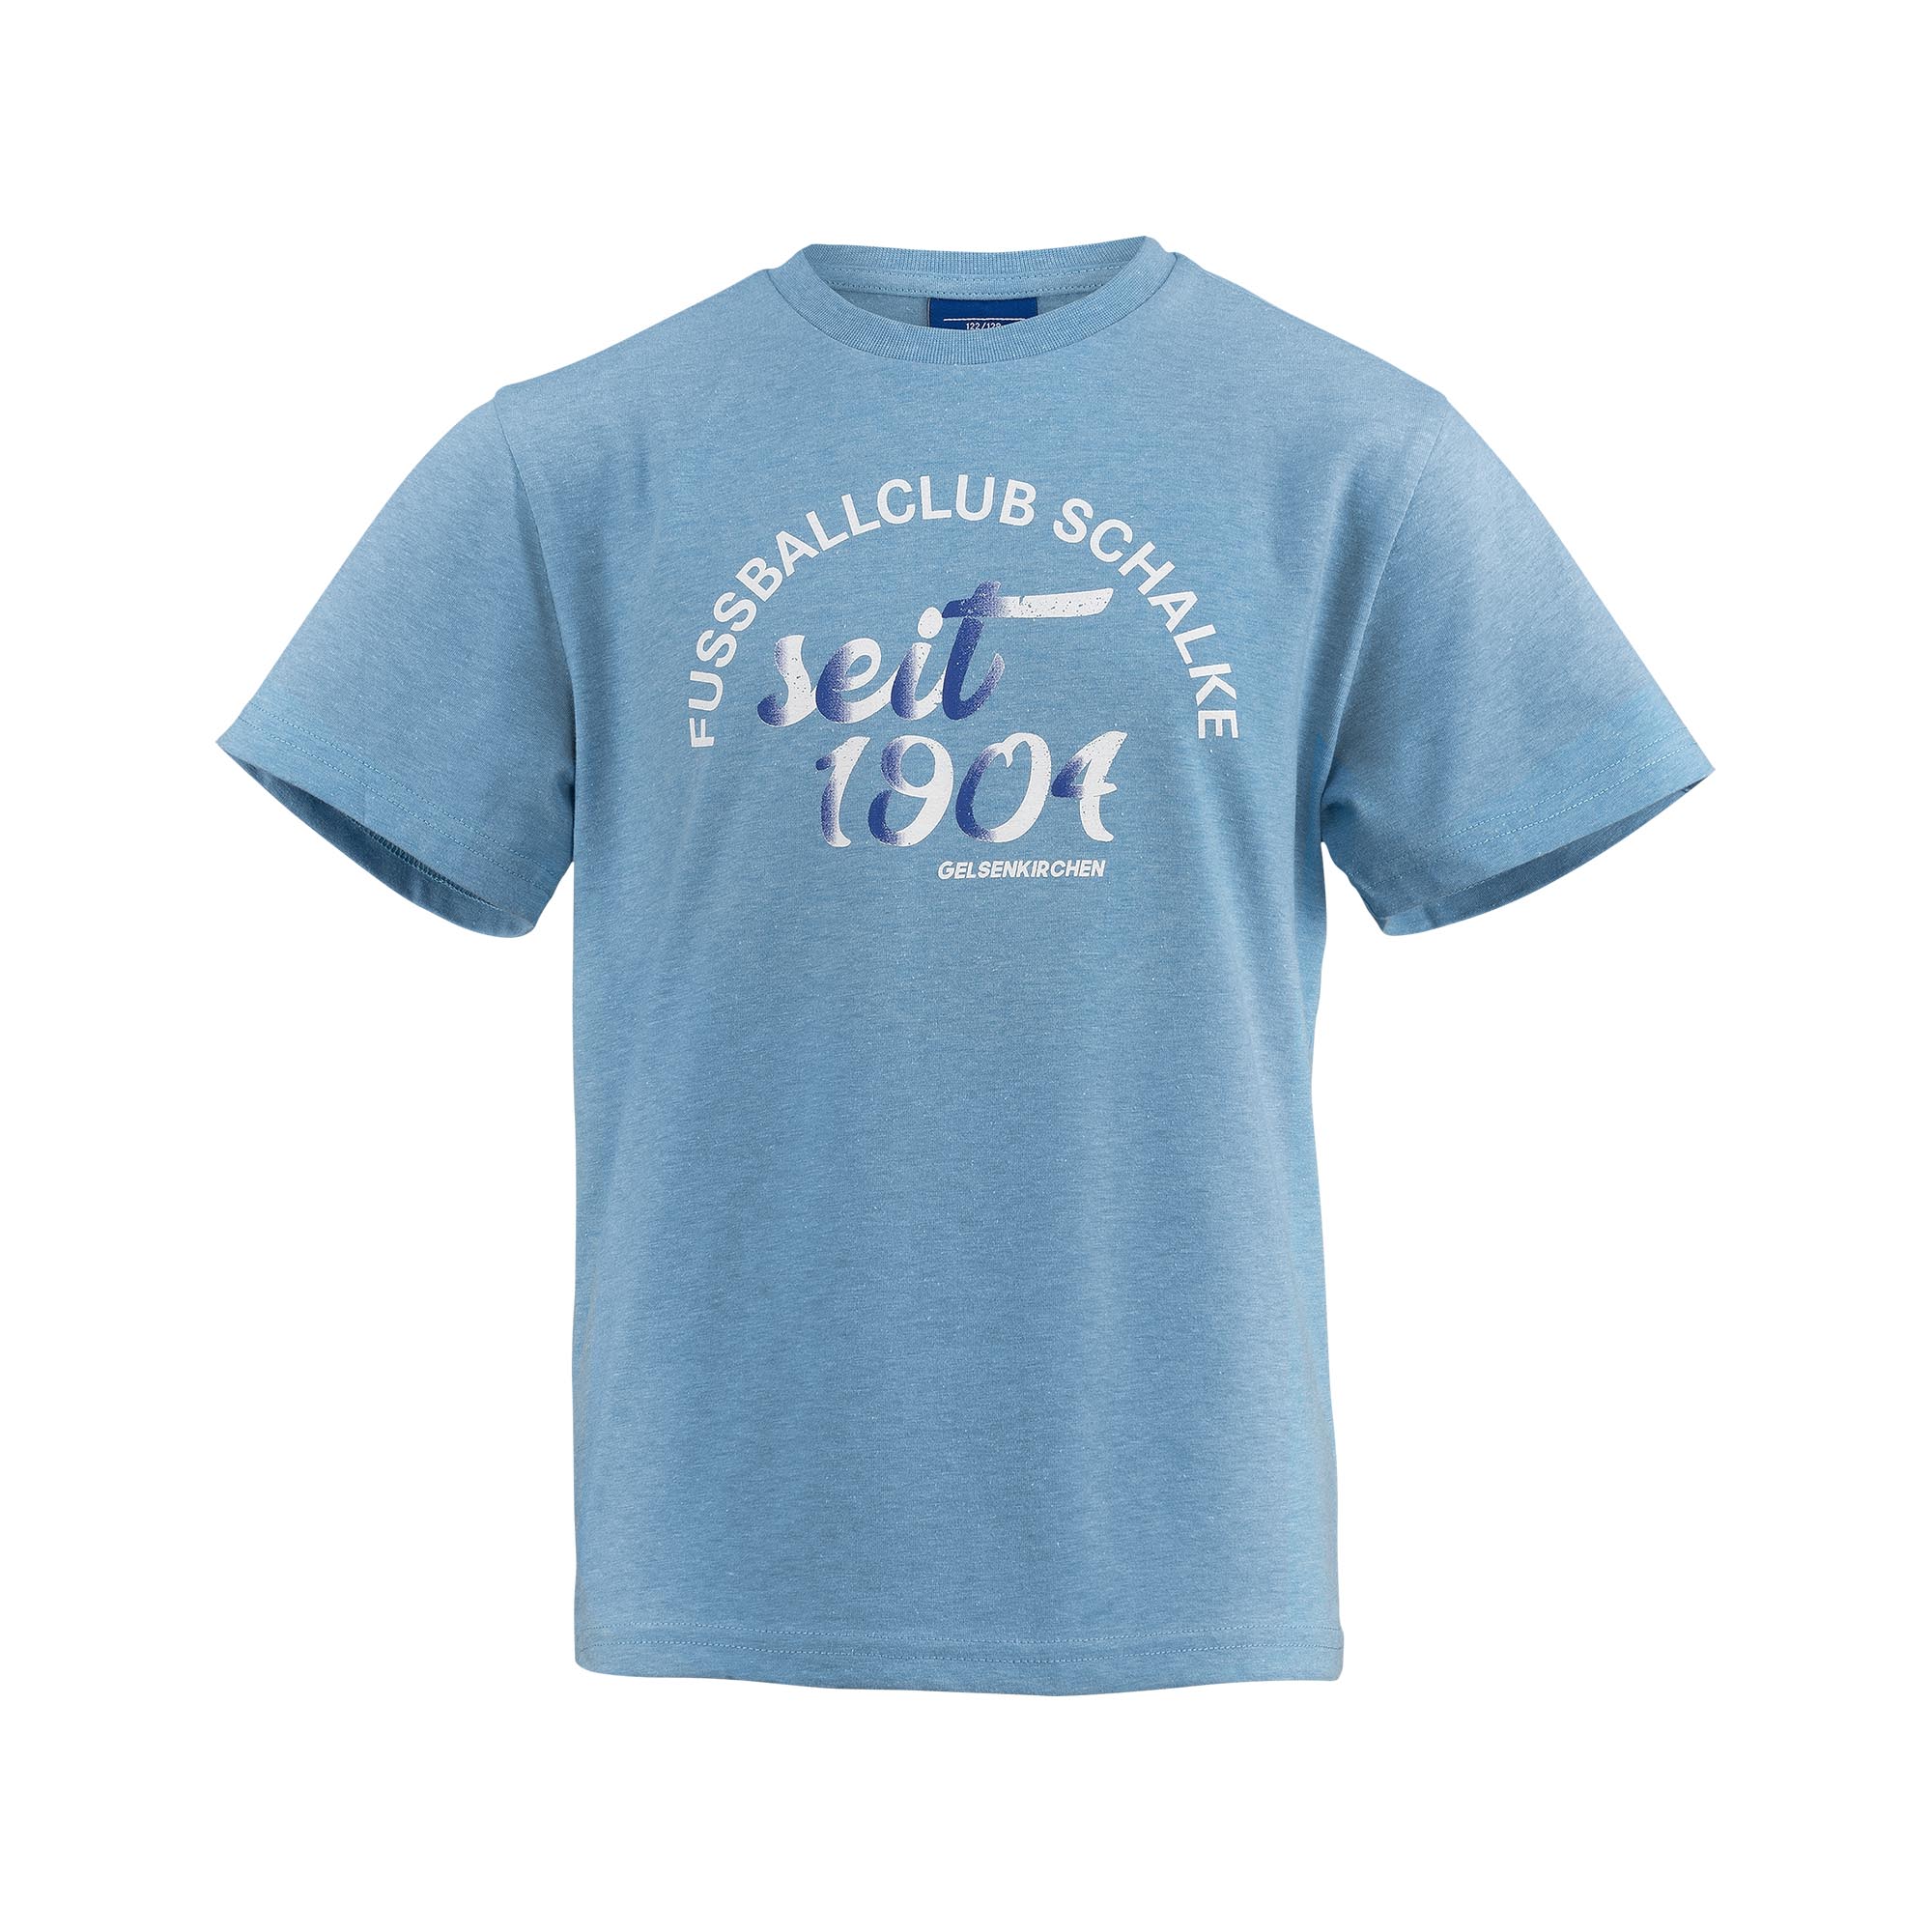 T-Shirt Kids blue meliert